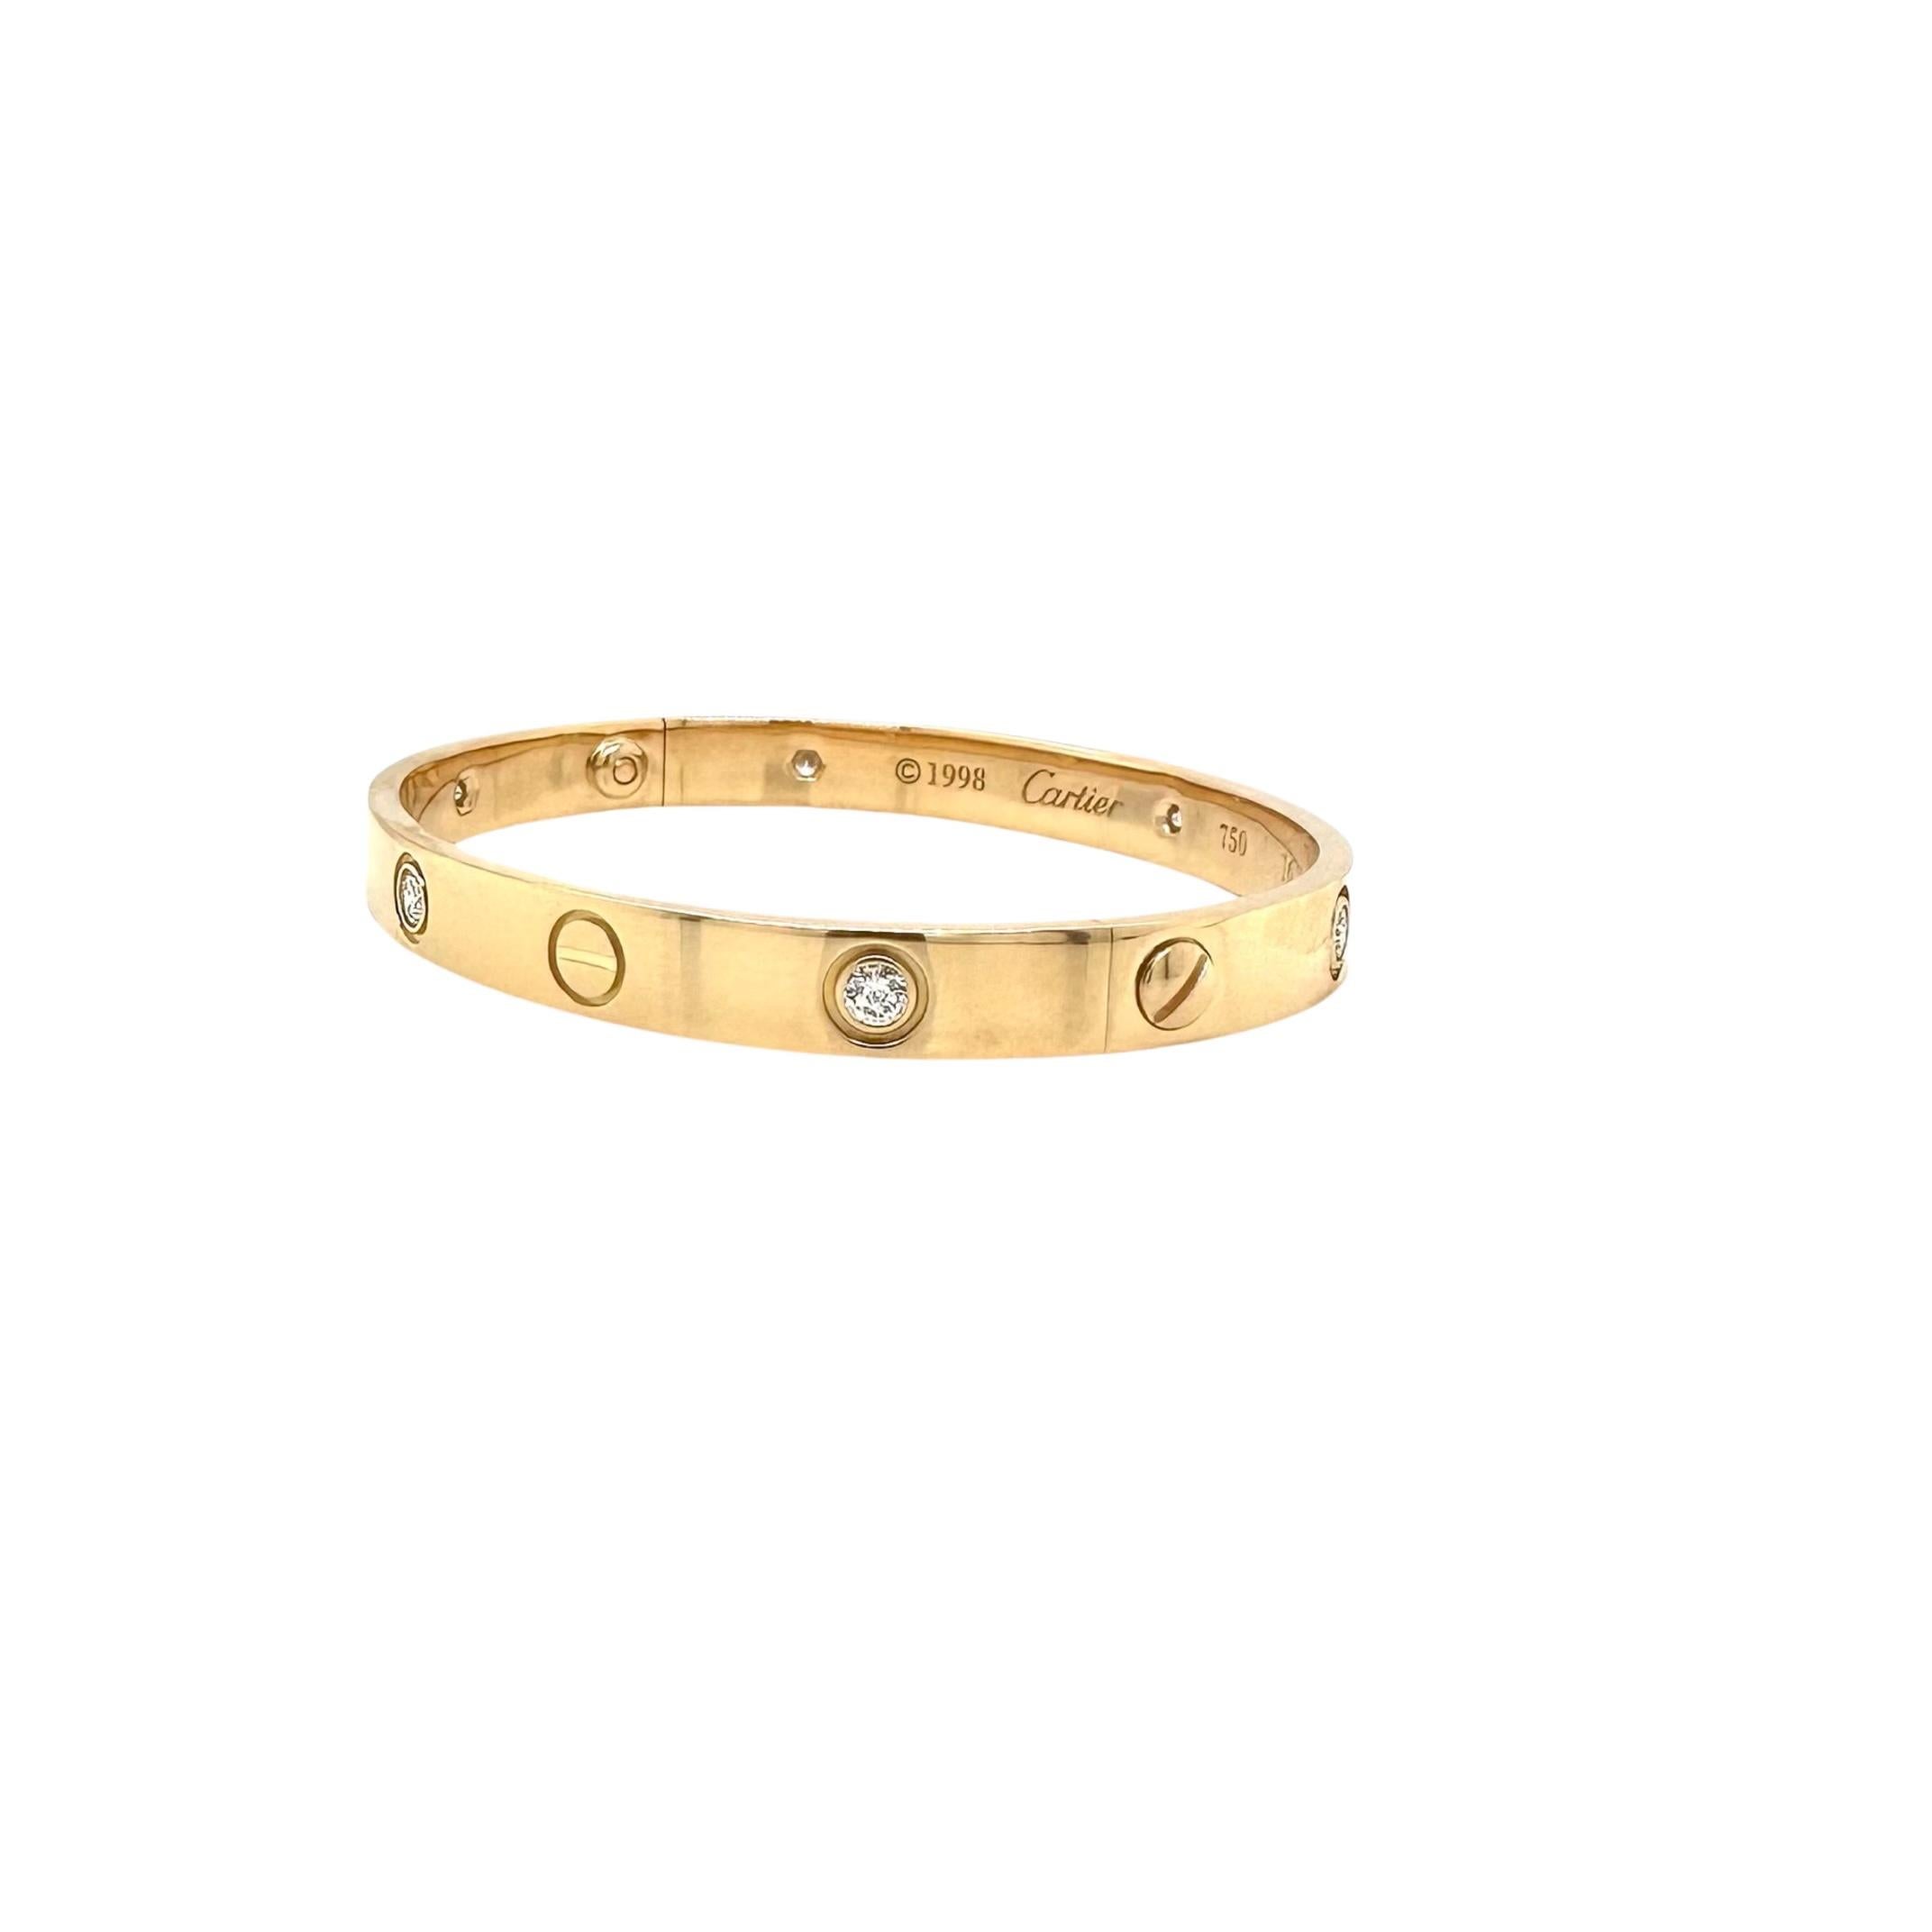 Créateur : Cartier
Collection :  Amour
Style : Bracelet
Métal : Or jaune 
Pureté du métal : 18K 
Pierres : 6 diamants ronds de taille Brilliante
Système à vis : Ancien système à vis (les vis se détachent)
Taille du bracelet : 16 = 16 cm
Poinçons :